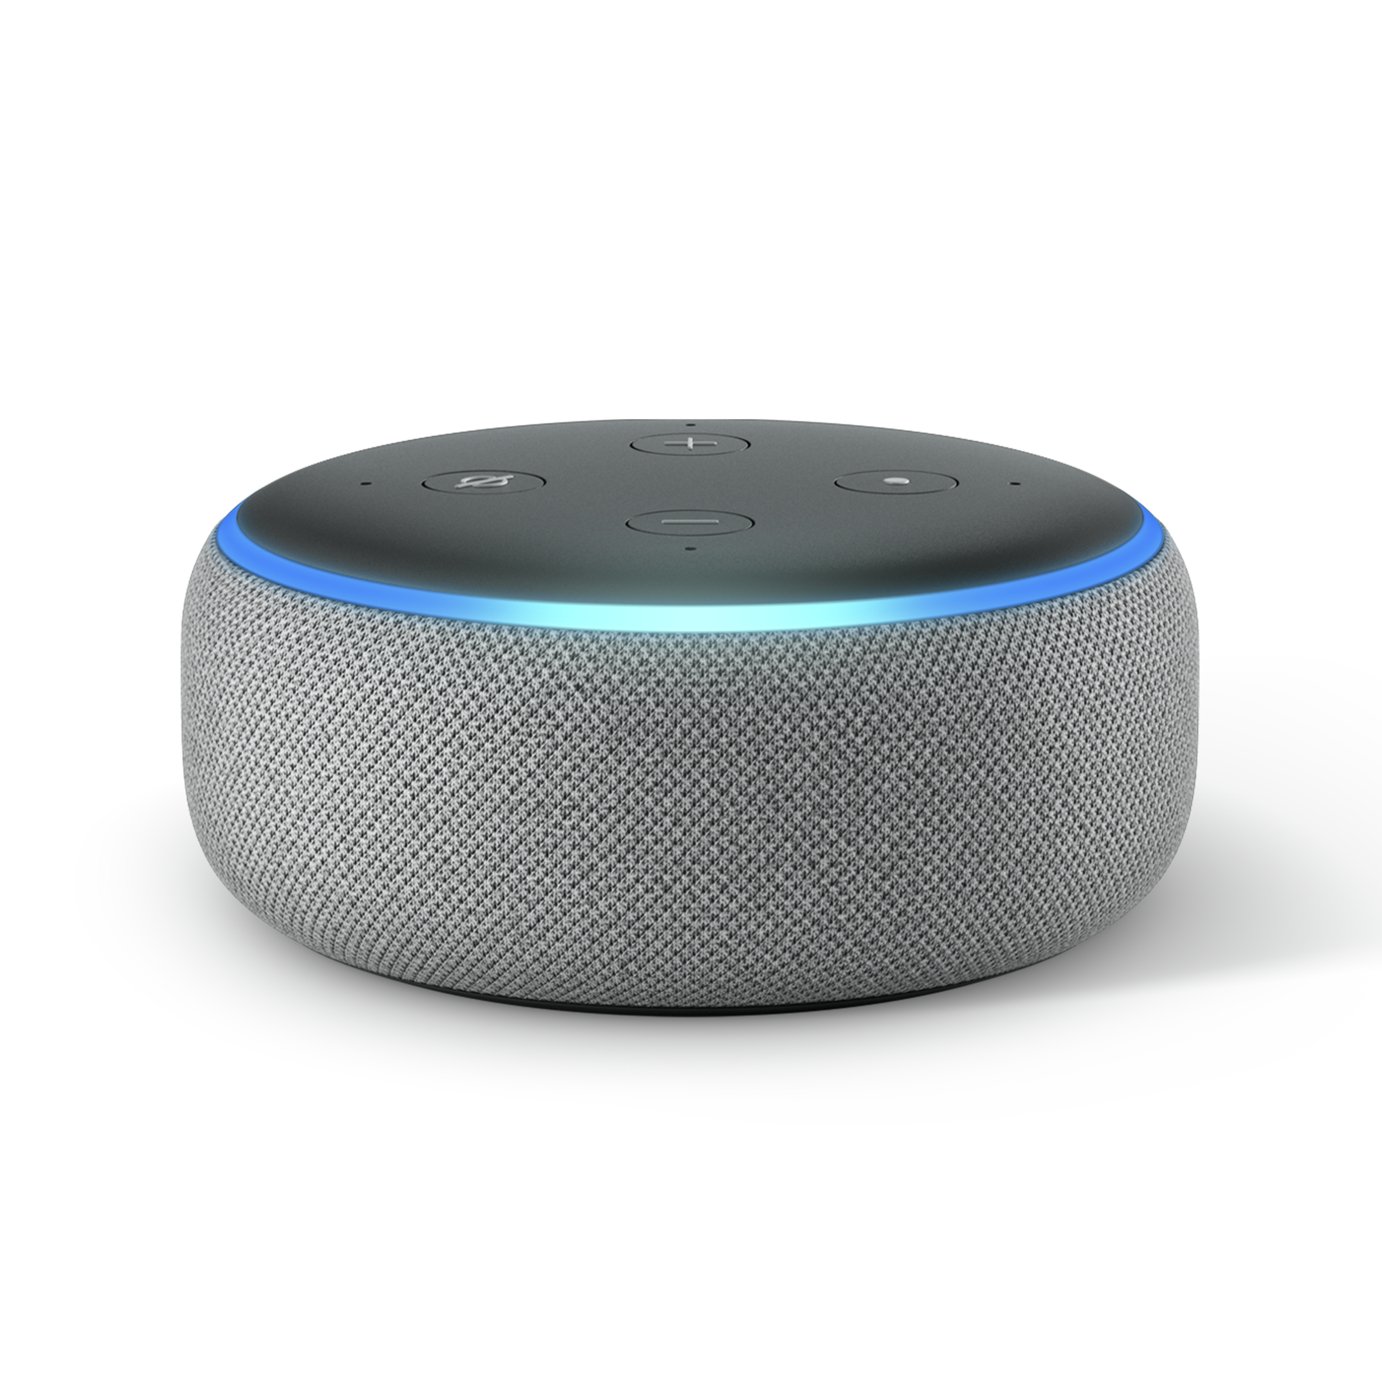 Buy Amazon Echo Dot Smart Speaker with 